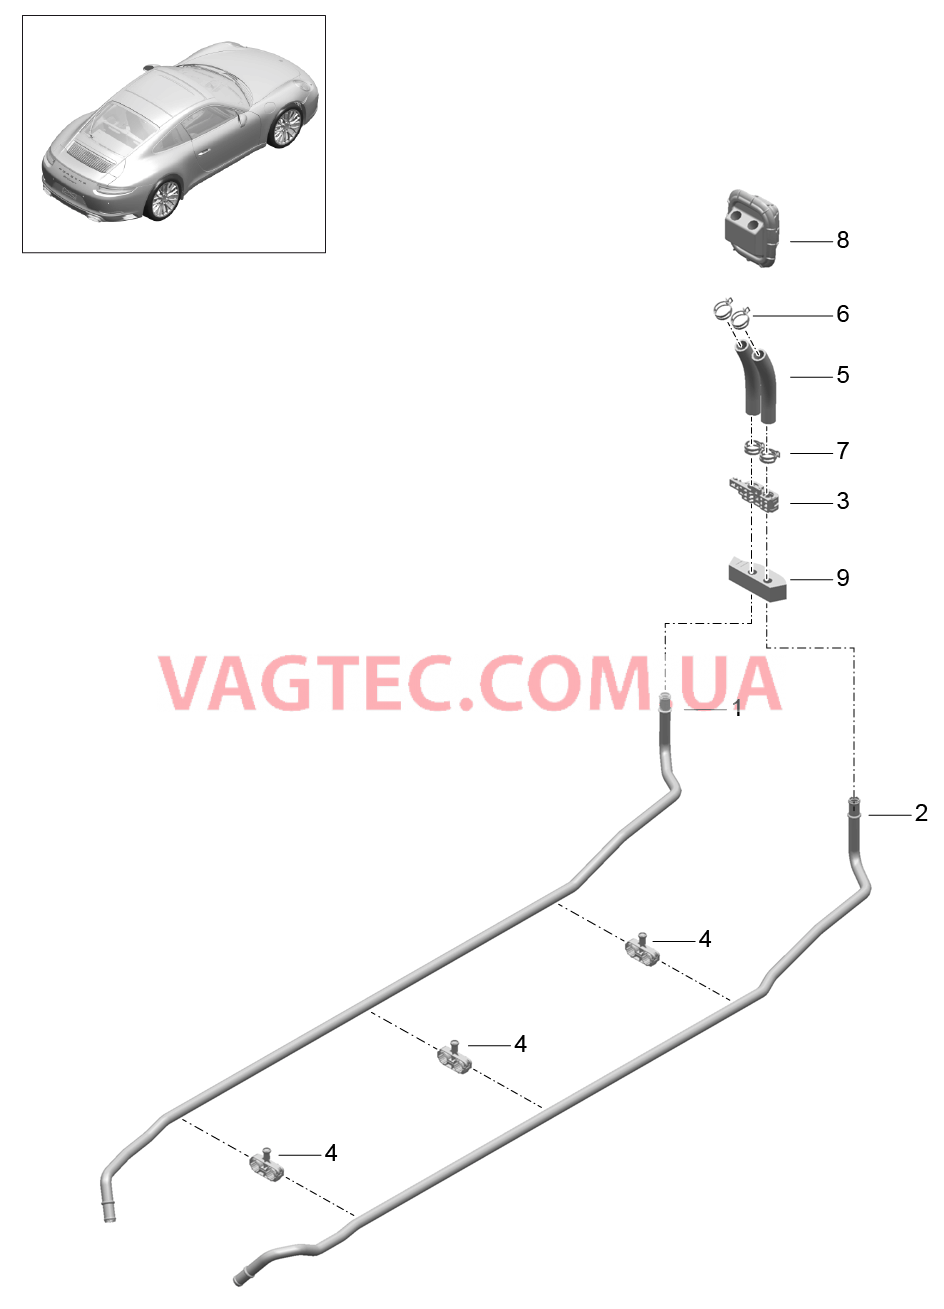 813-050 Обогрев, Подводящий трубопровод, Обратная магистраль для PORSCHE 911.Carrera 2017-2018